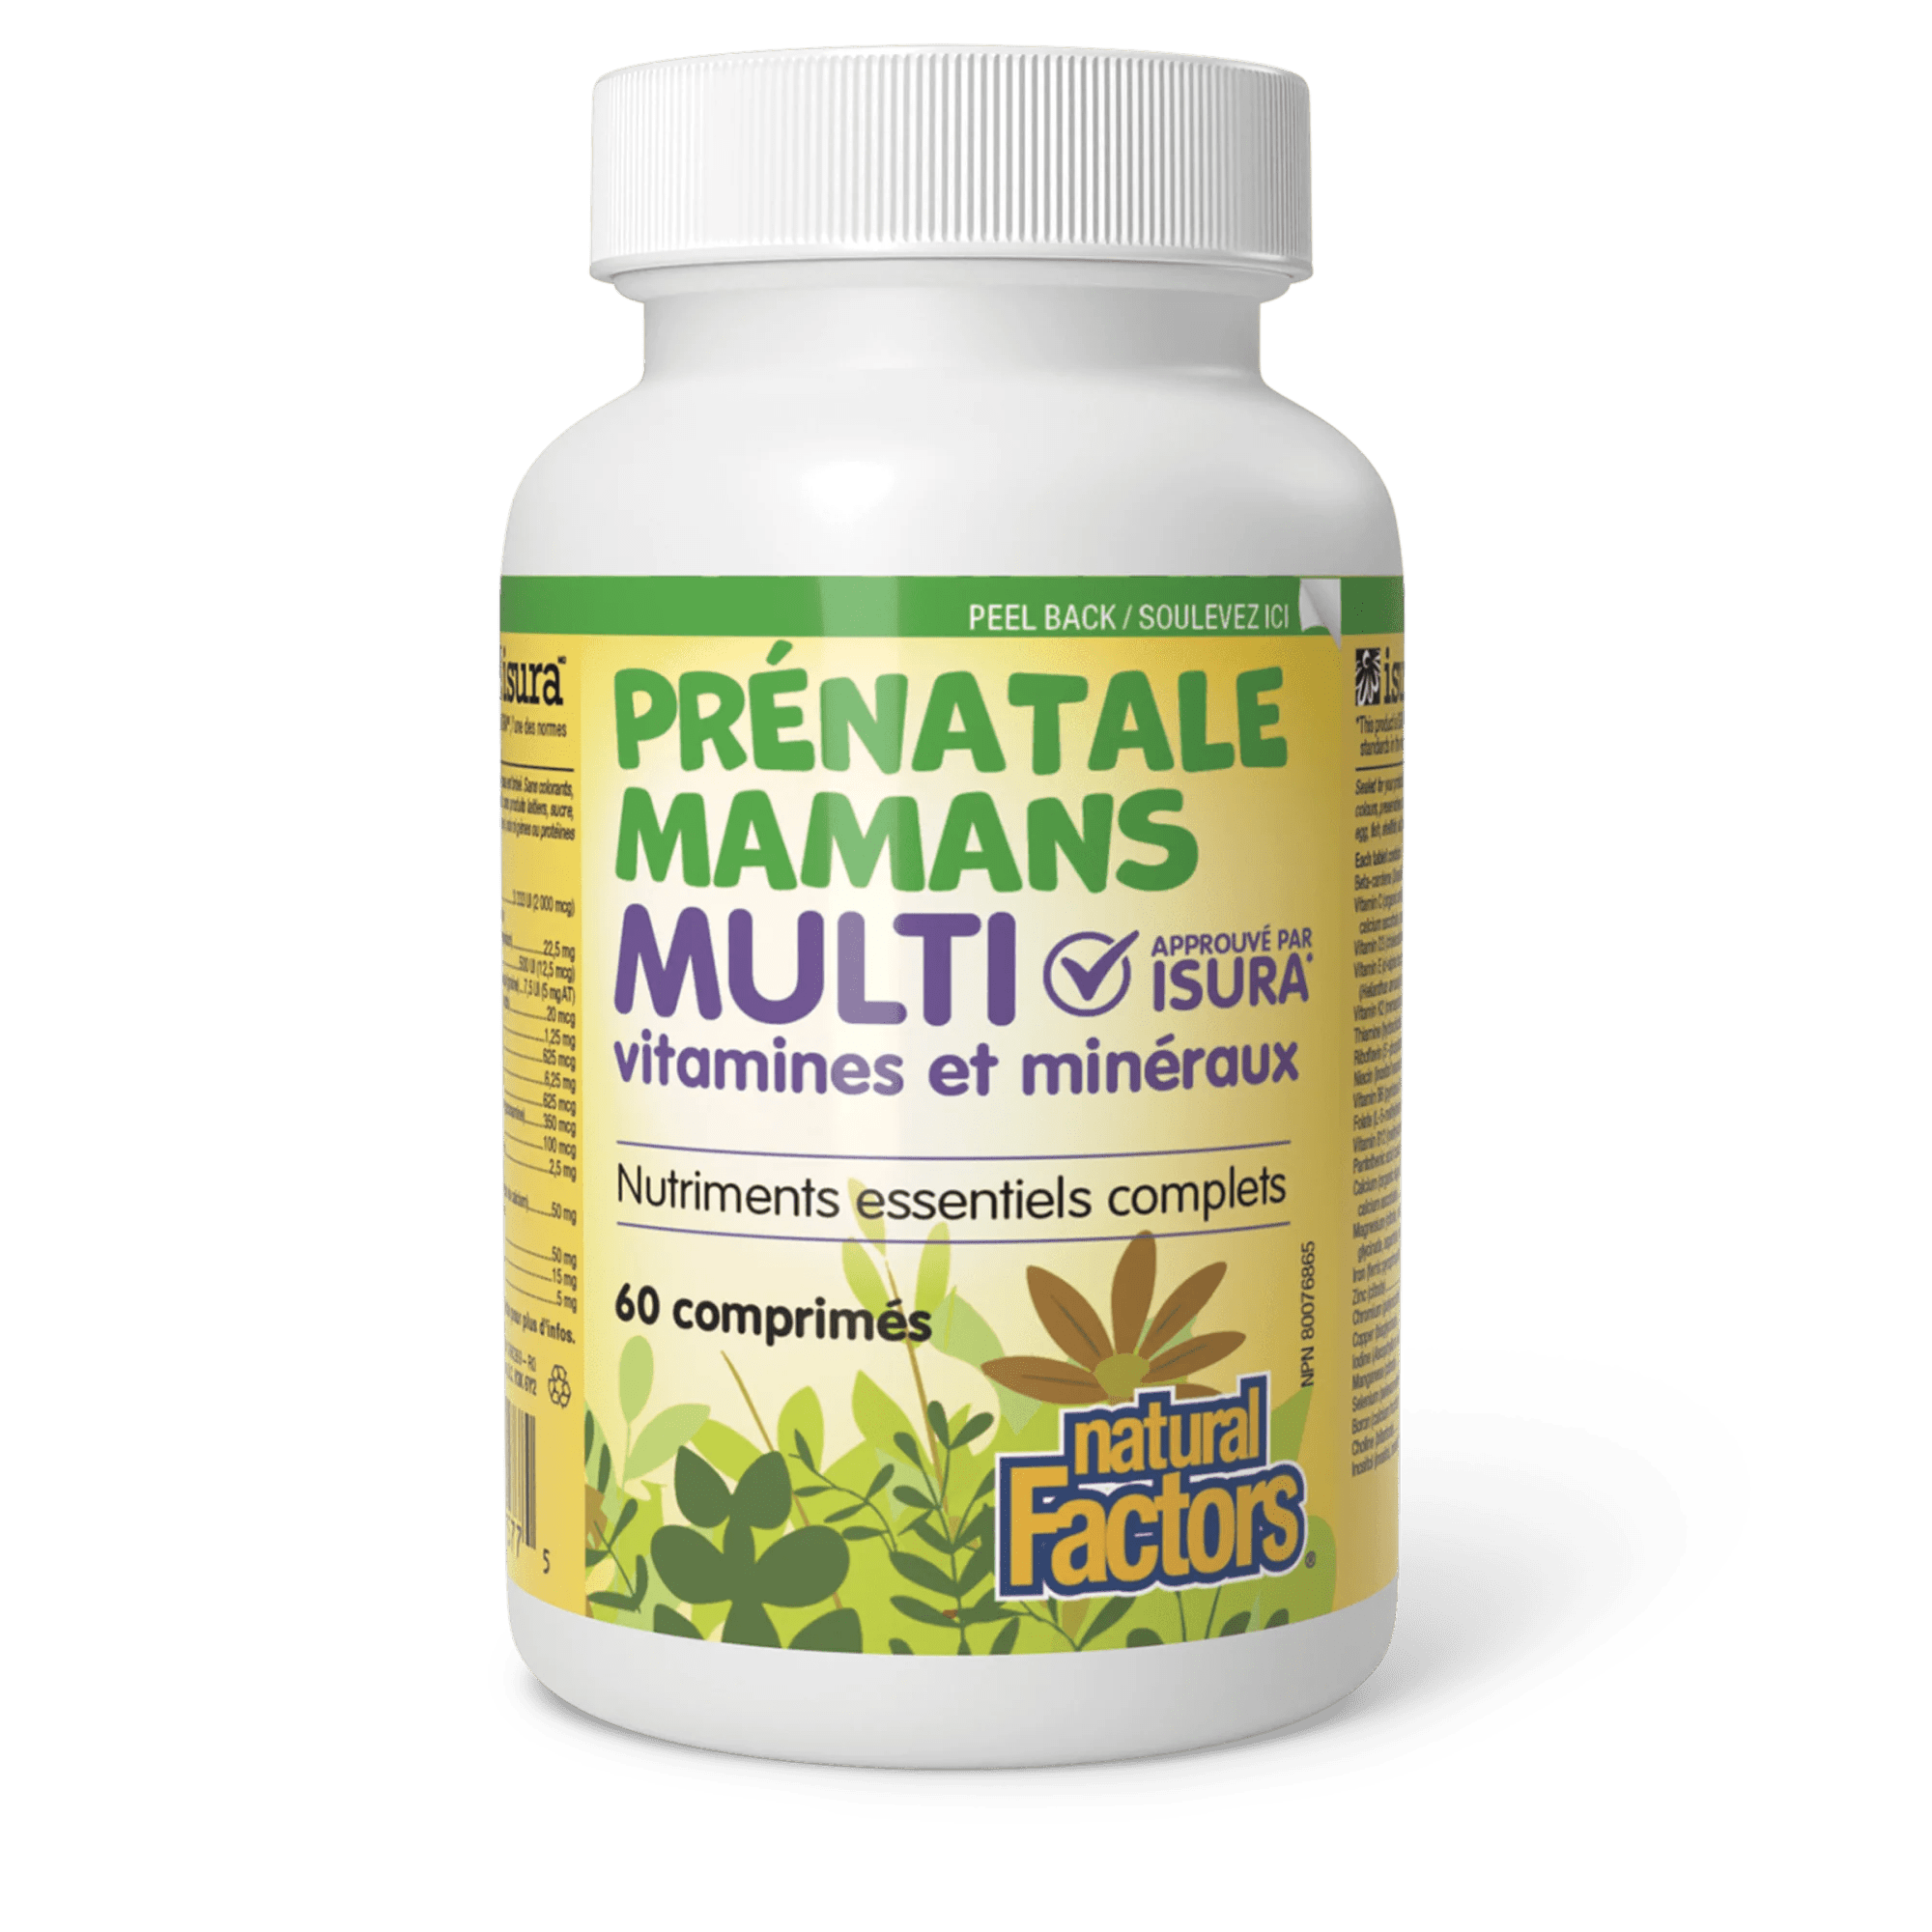 NATURAL FACTORS Suppléments Multivitamines et minéraux prénatale 60comp